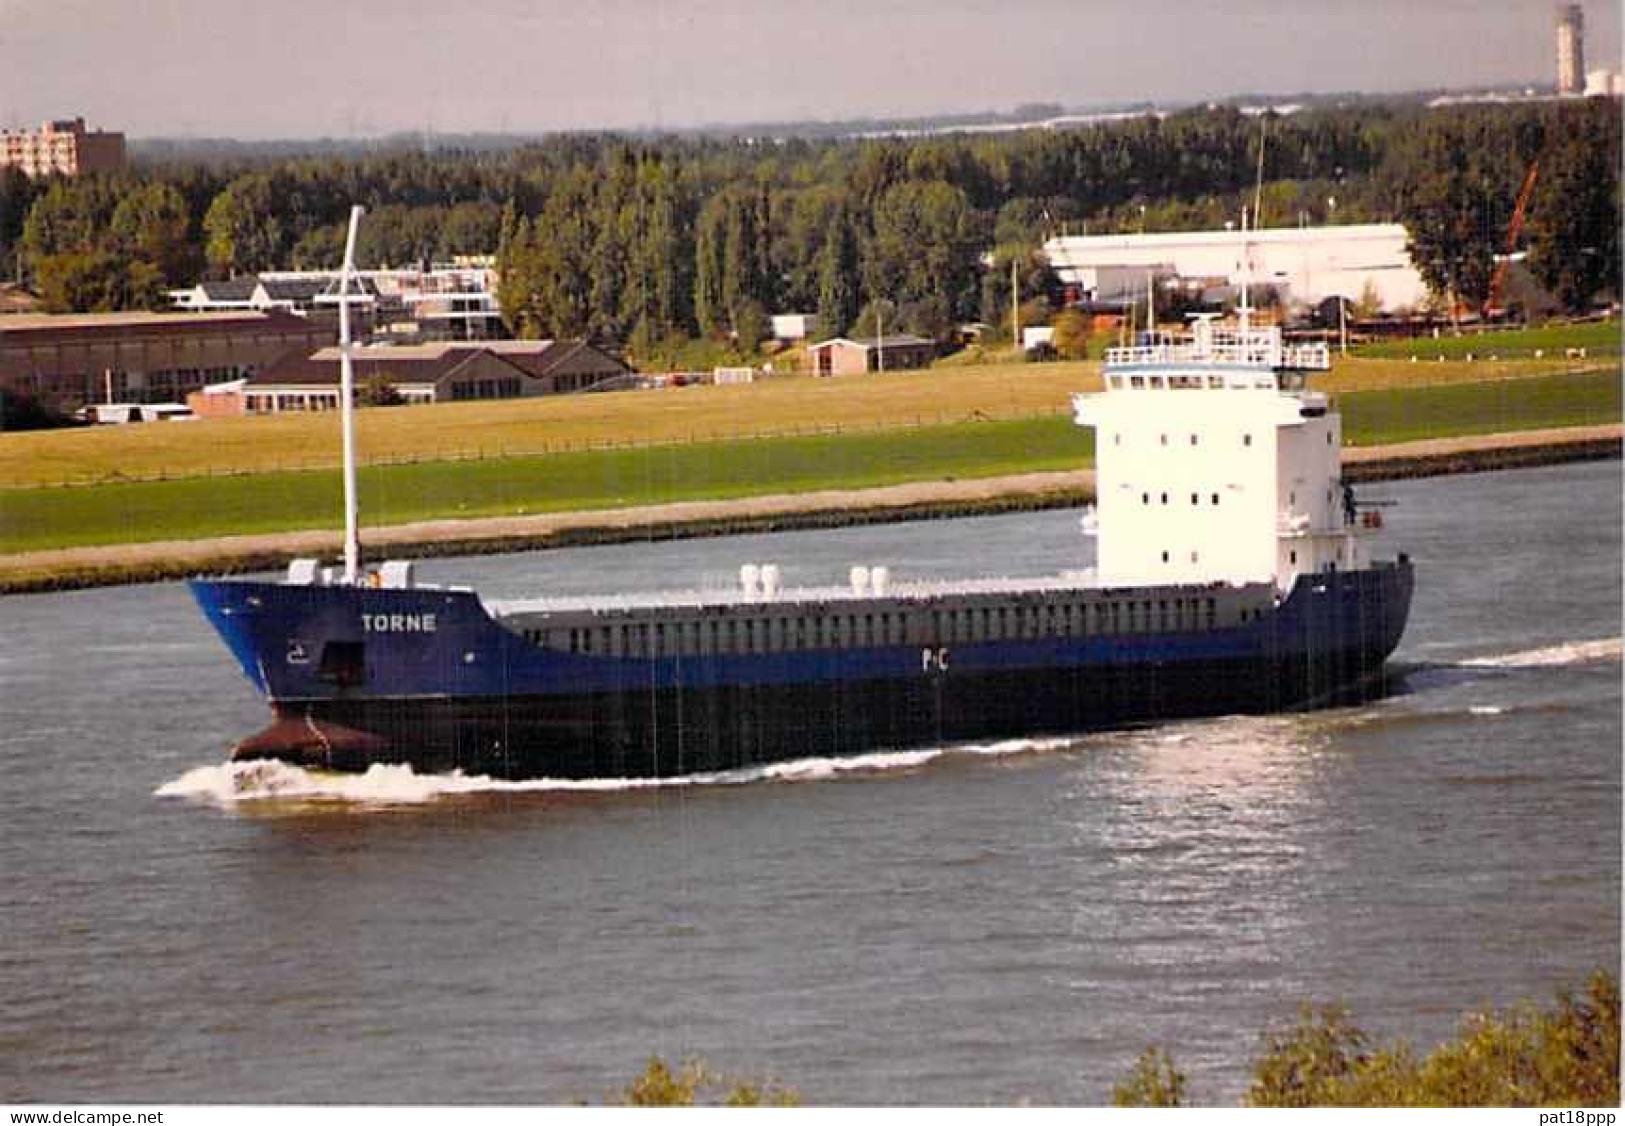 Lot de 100 BATEAUX DE COMMERCE - Photos couleur format CPM Cargo Ferry Merchant Ship Tanker Carrier Boats 1980-2000